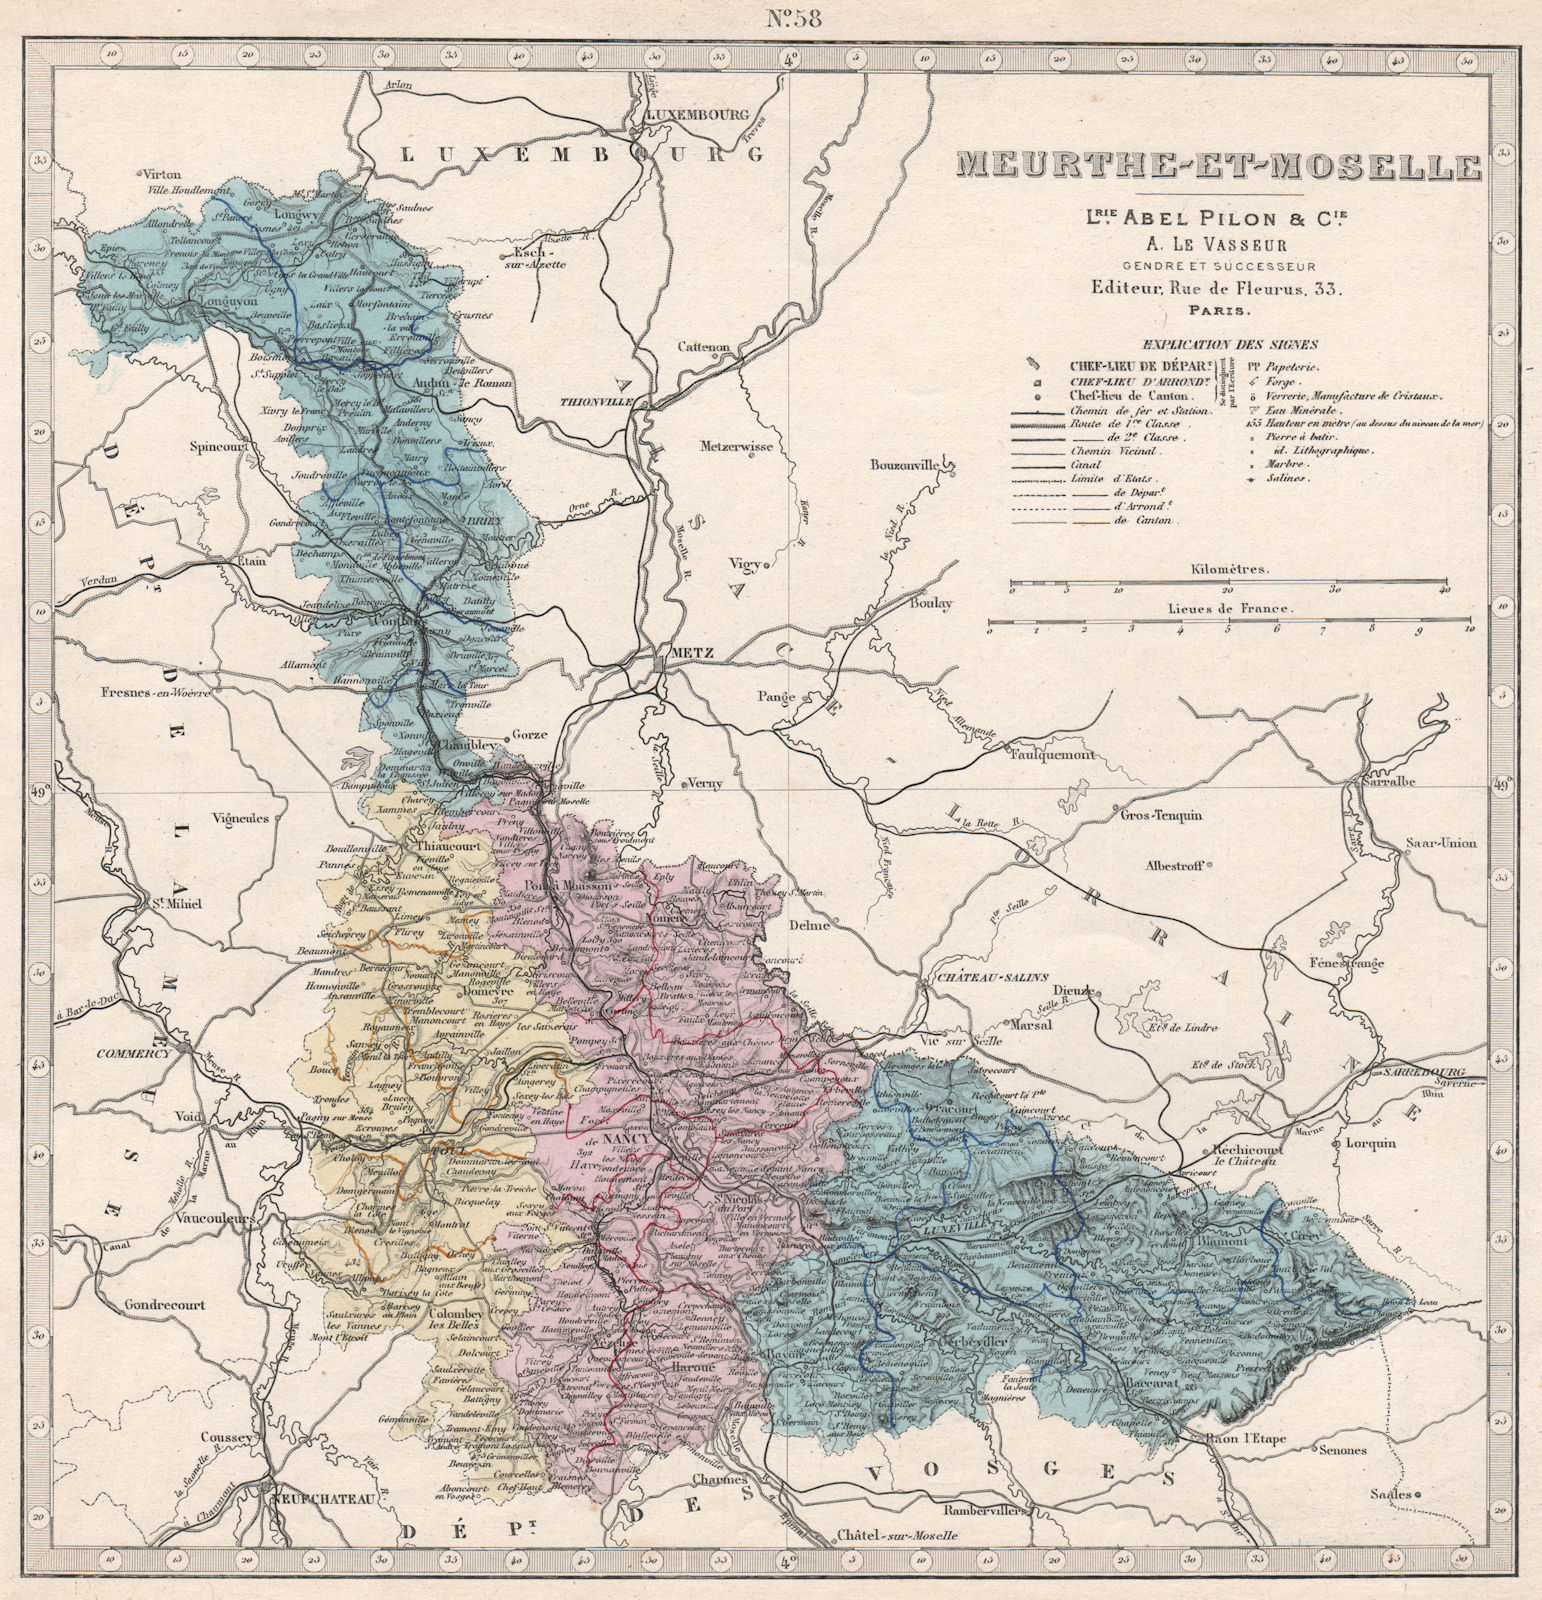 MEURTHE-ET-MOSELLE department showing resources & minerals. LE VASSEUR 1876 map